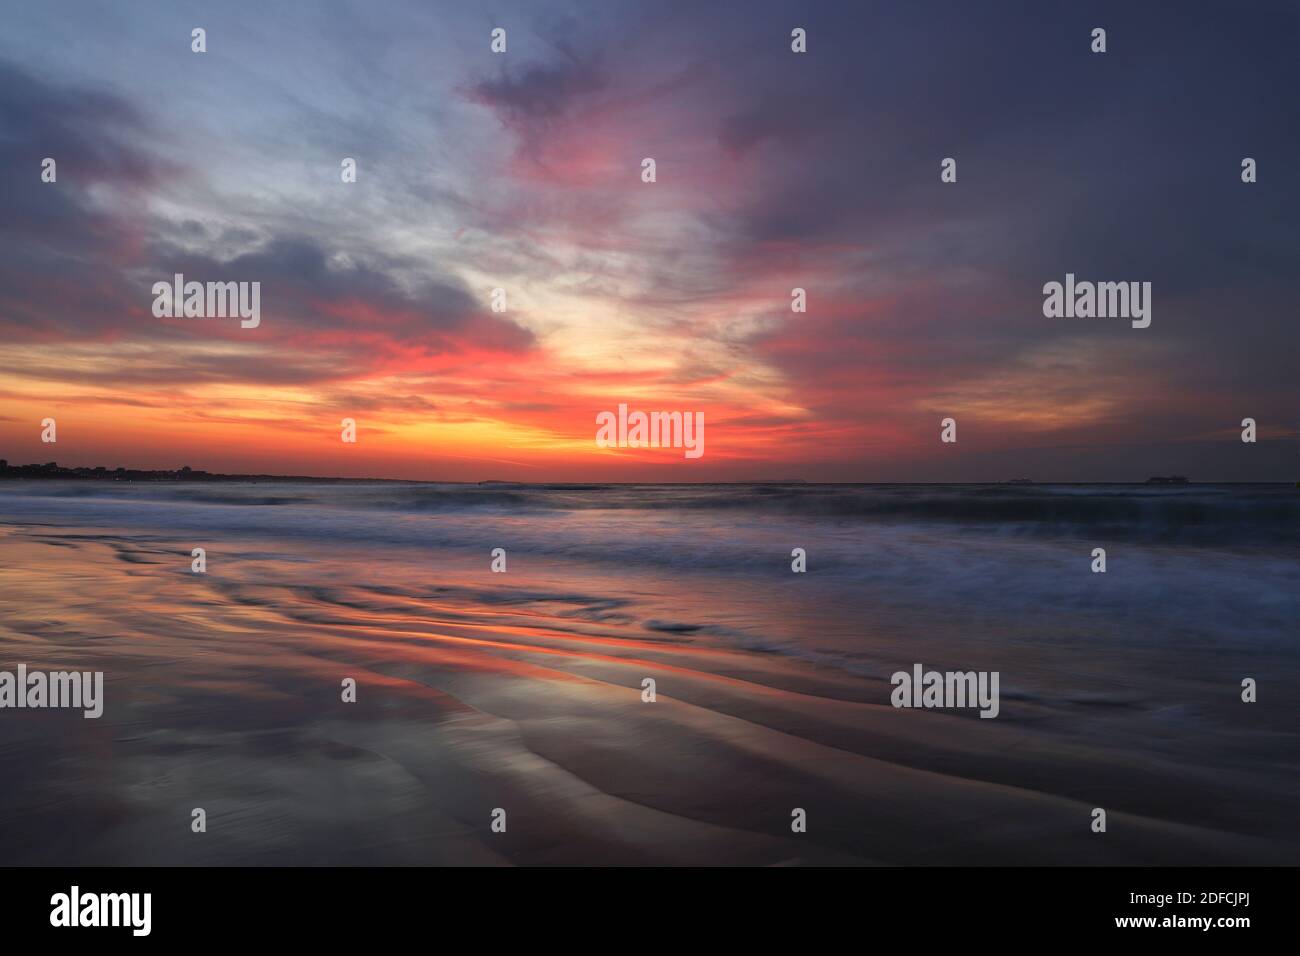 Il sole sorge in una raffica di colore arancio, rosso e viola in un cielo pieno di spesse nuvole. Le onde del mare si schiumano sulla sabbia bagnata e riflettente. Foto Stock